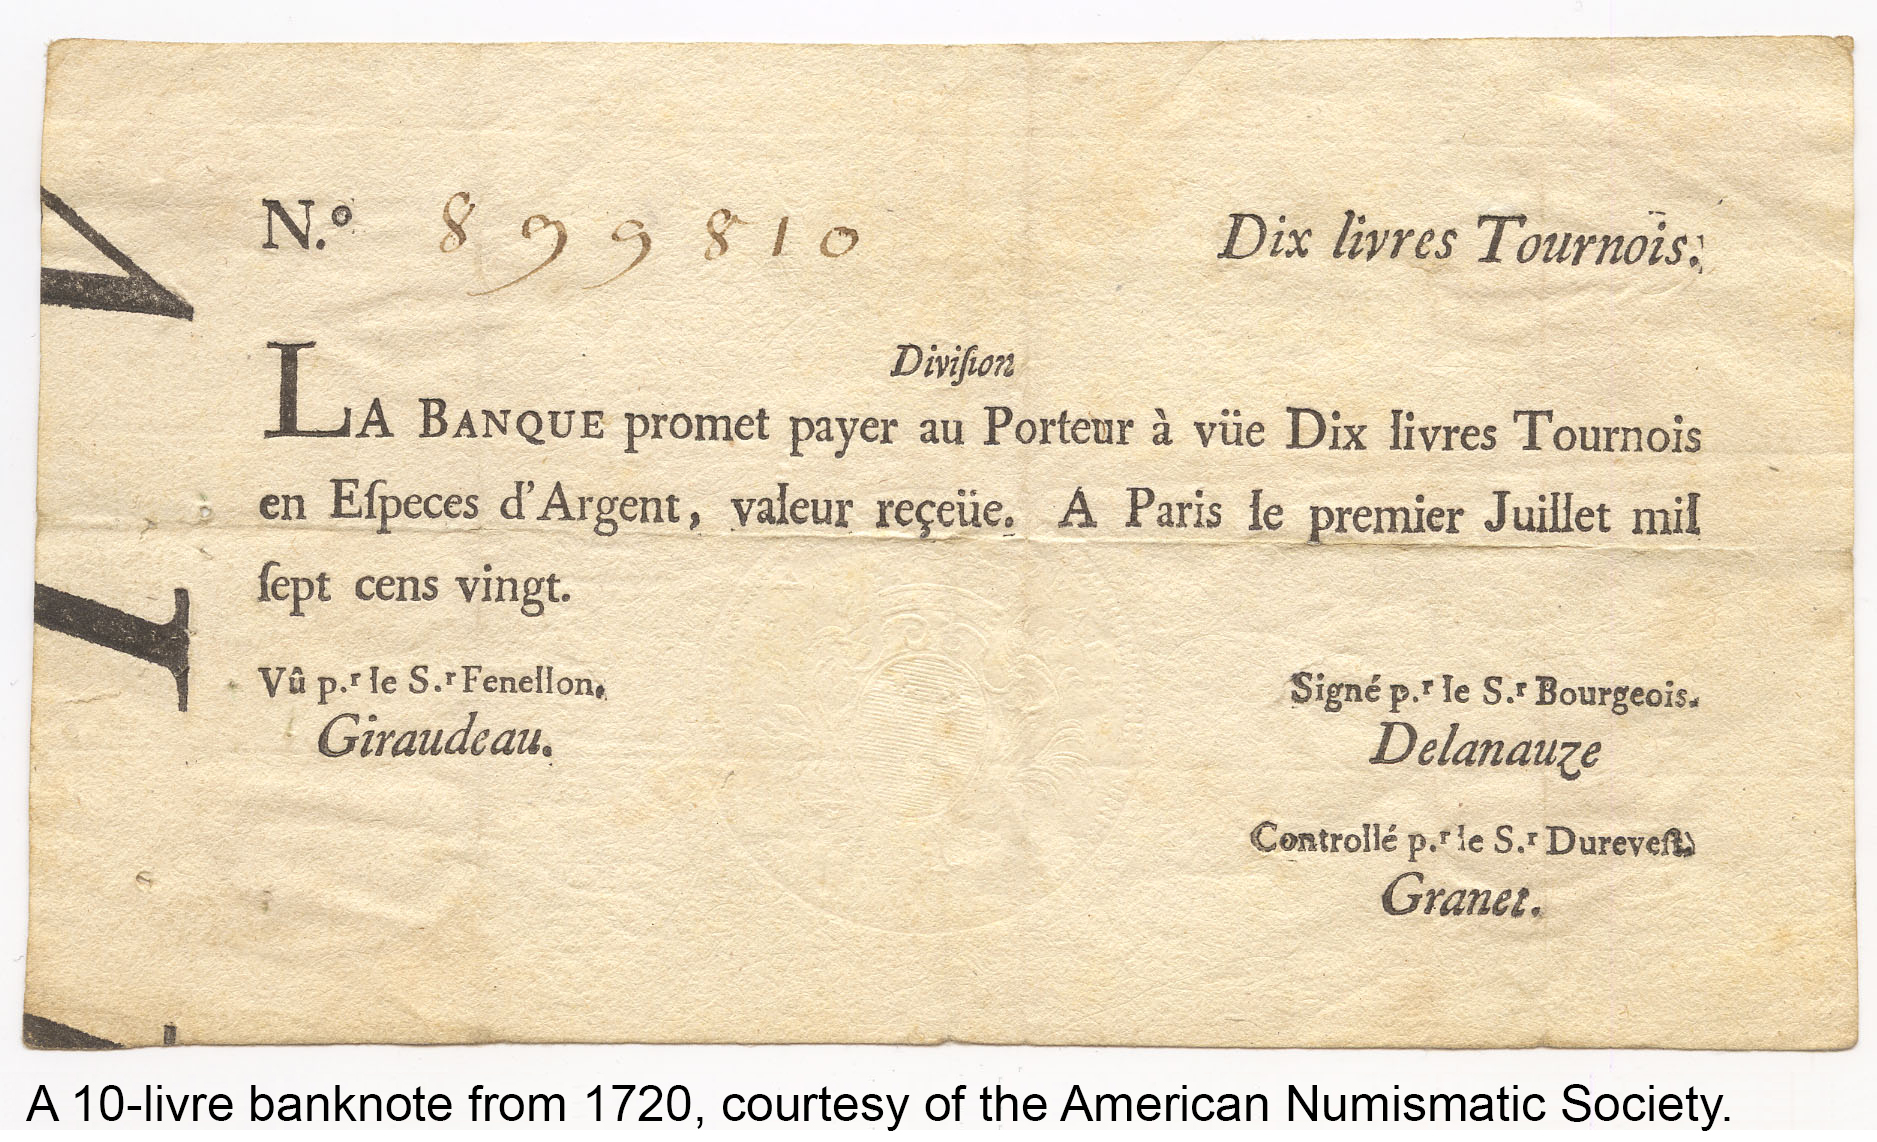 USA, MISSISSIPPI $2,000 bond Reimbursable in 1858, f…